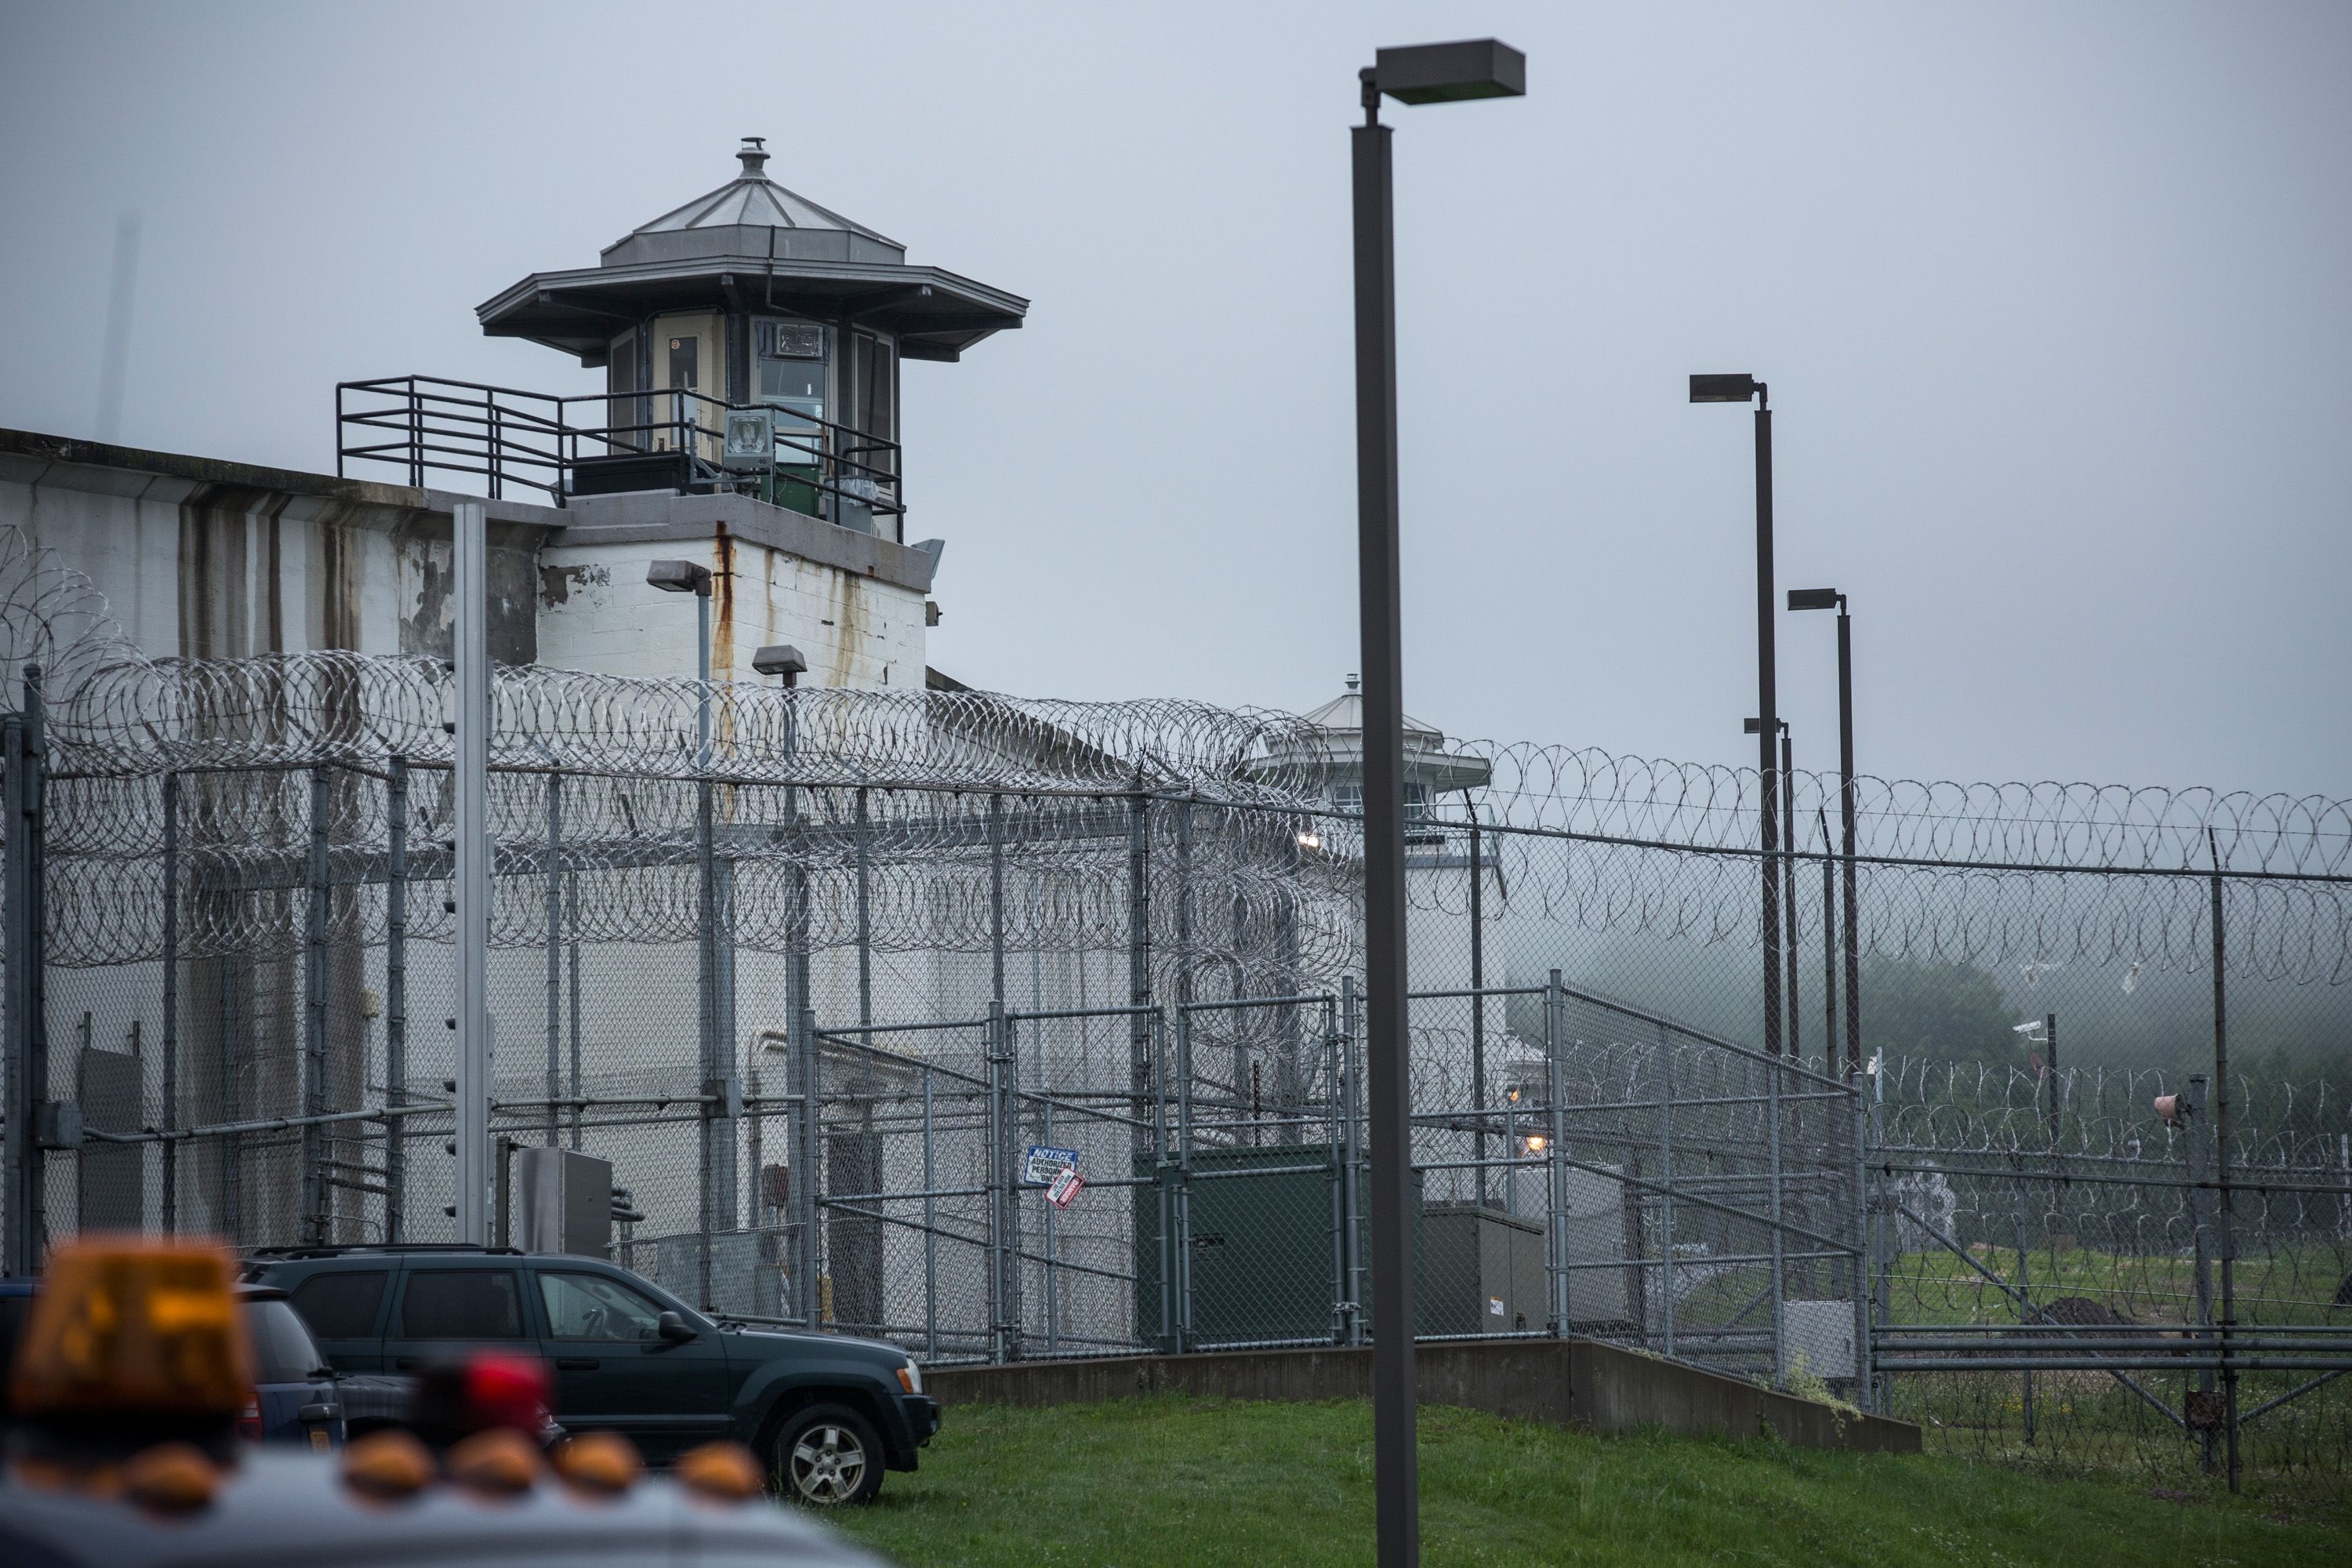 A state prison in Dannemora, New York.